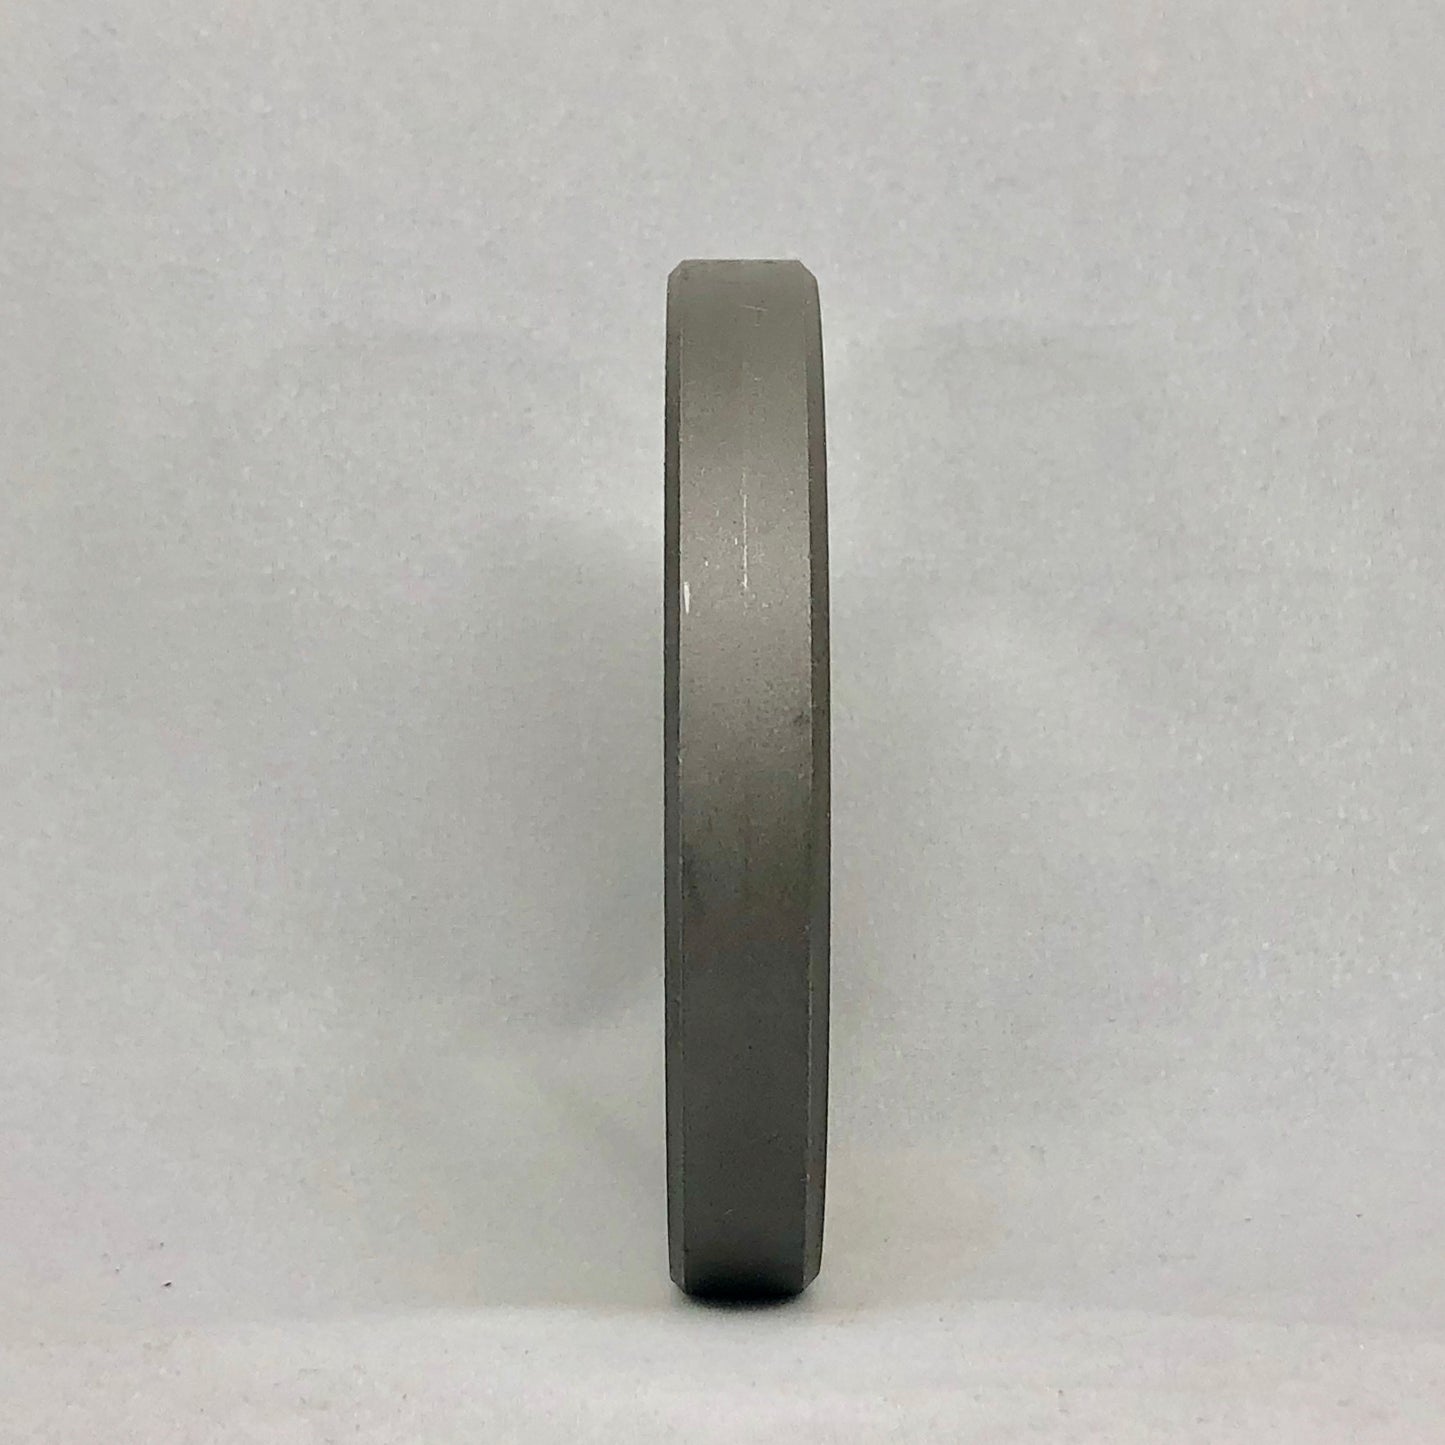 22 TRIUMPH CLEV. 3/4" HOLES - Size 22 Reversible Grinder Plate - 103364